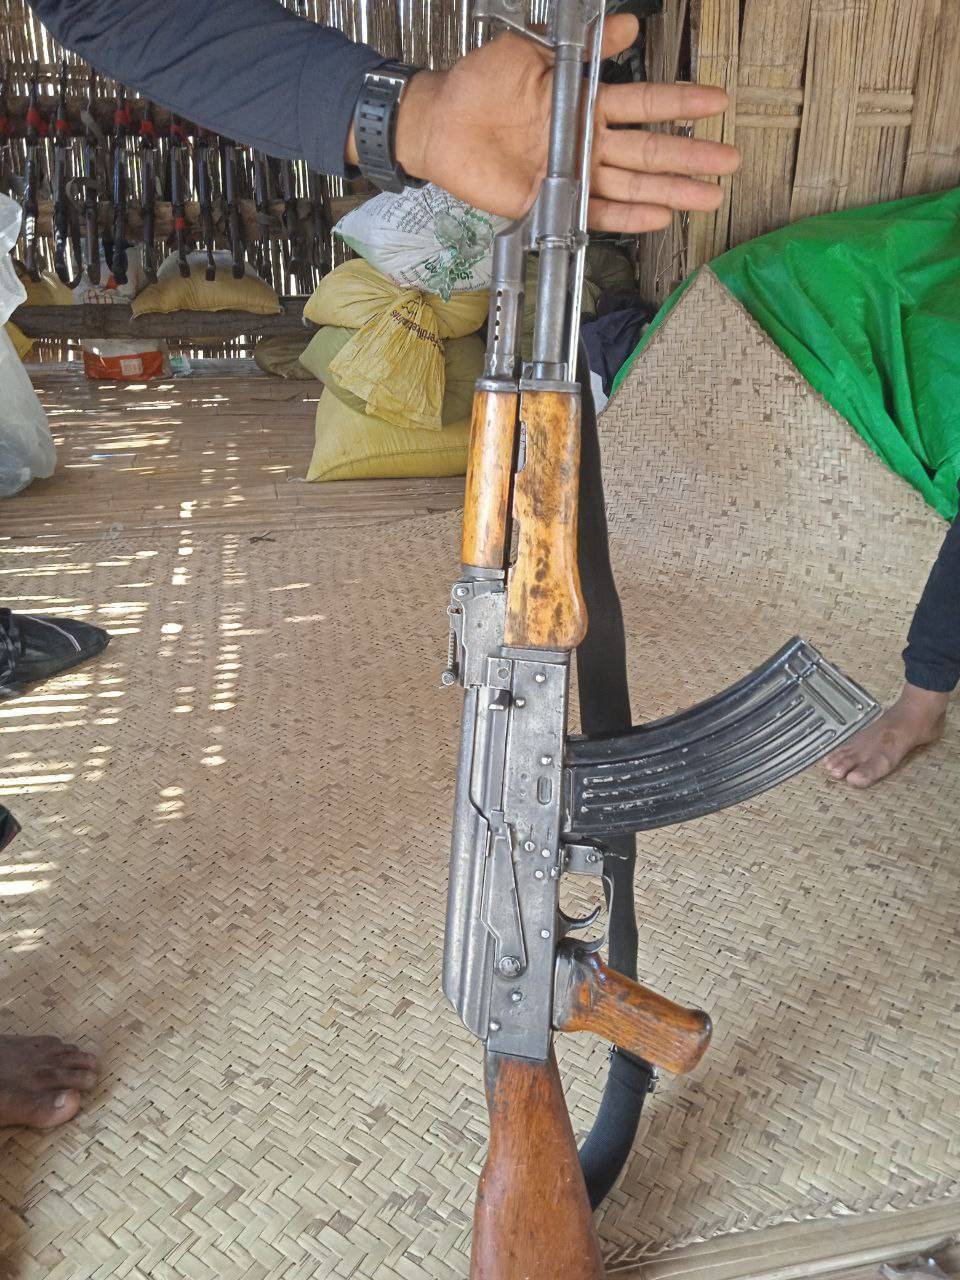 ပြည်သူတဦးရဲ့လှူဒါန်းငွေနဲ့ ချောက်ပြောက်ကျားတပ်ဖွဲ့က AK 47 တလက်ဝယ်နိုင်ခဲ့